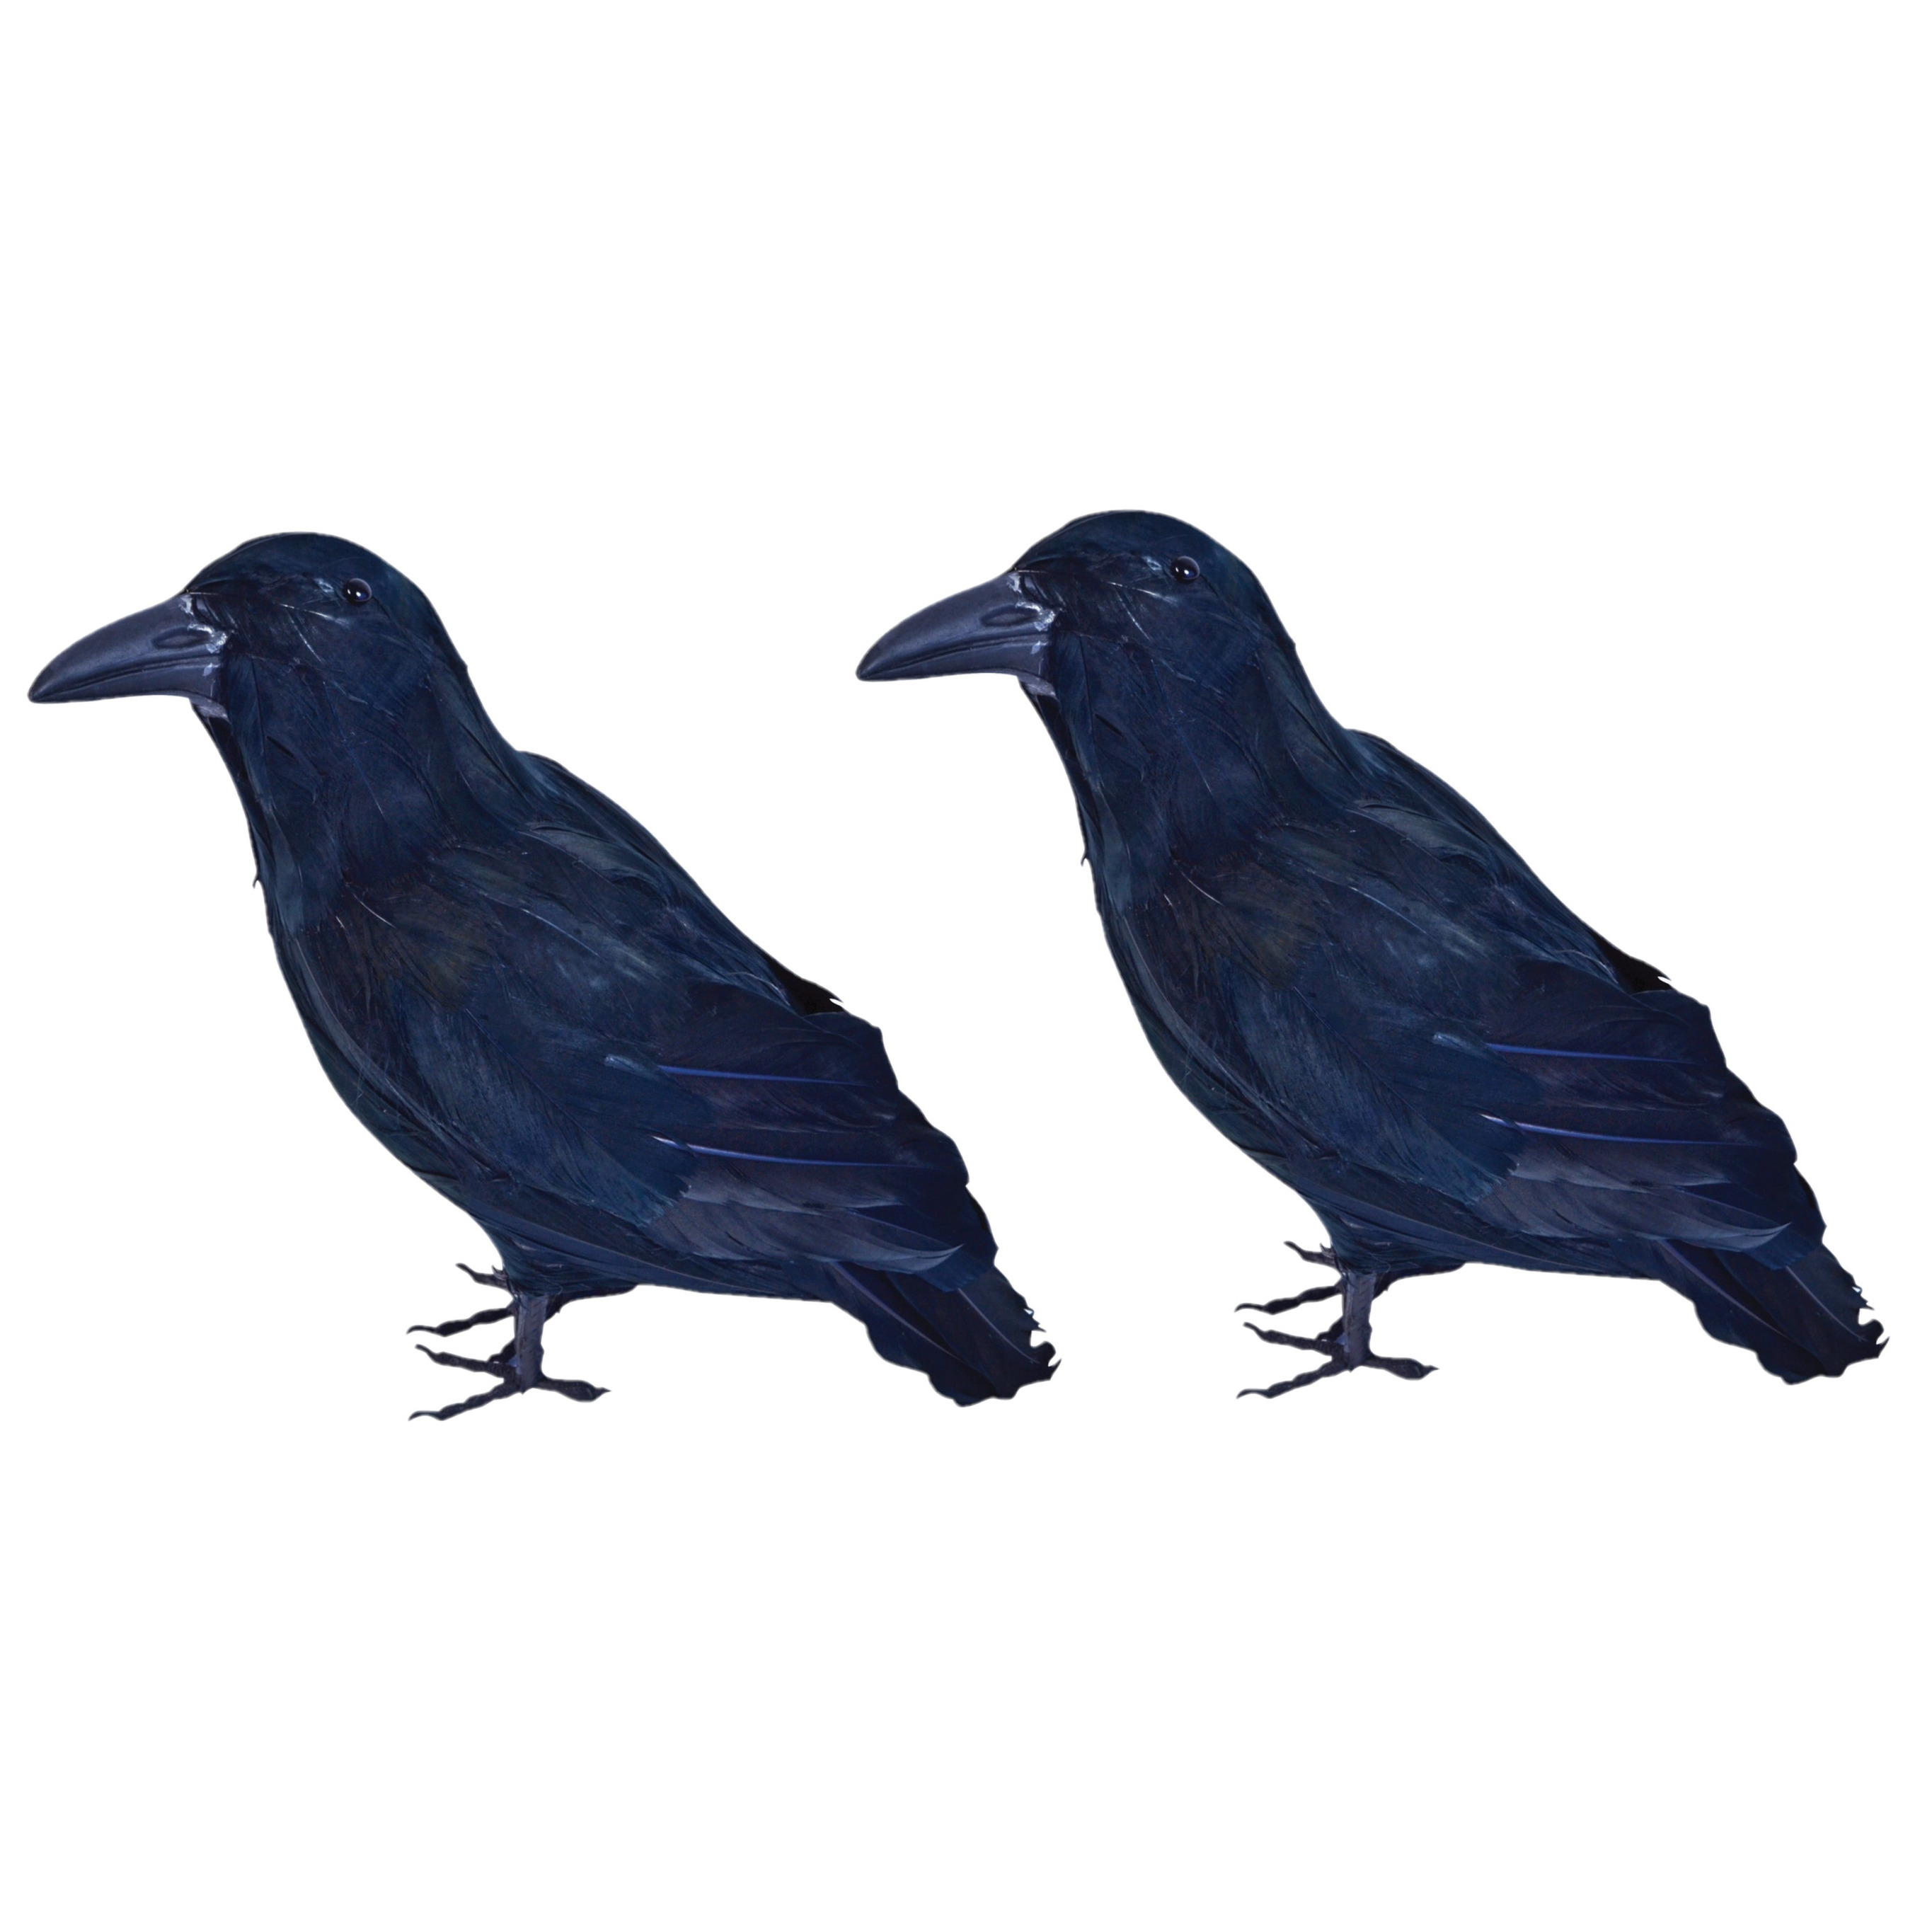 Afbeelding 2x Horror raven/kraaien zwart 30 cm door Animals Giftshop